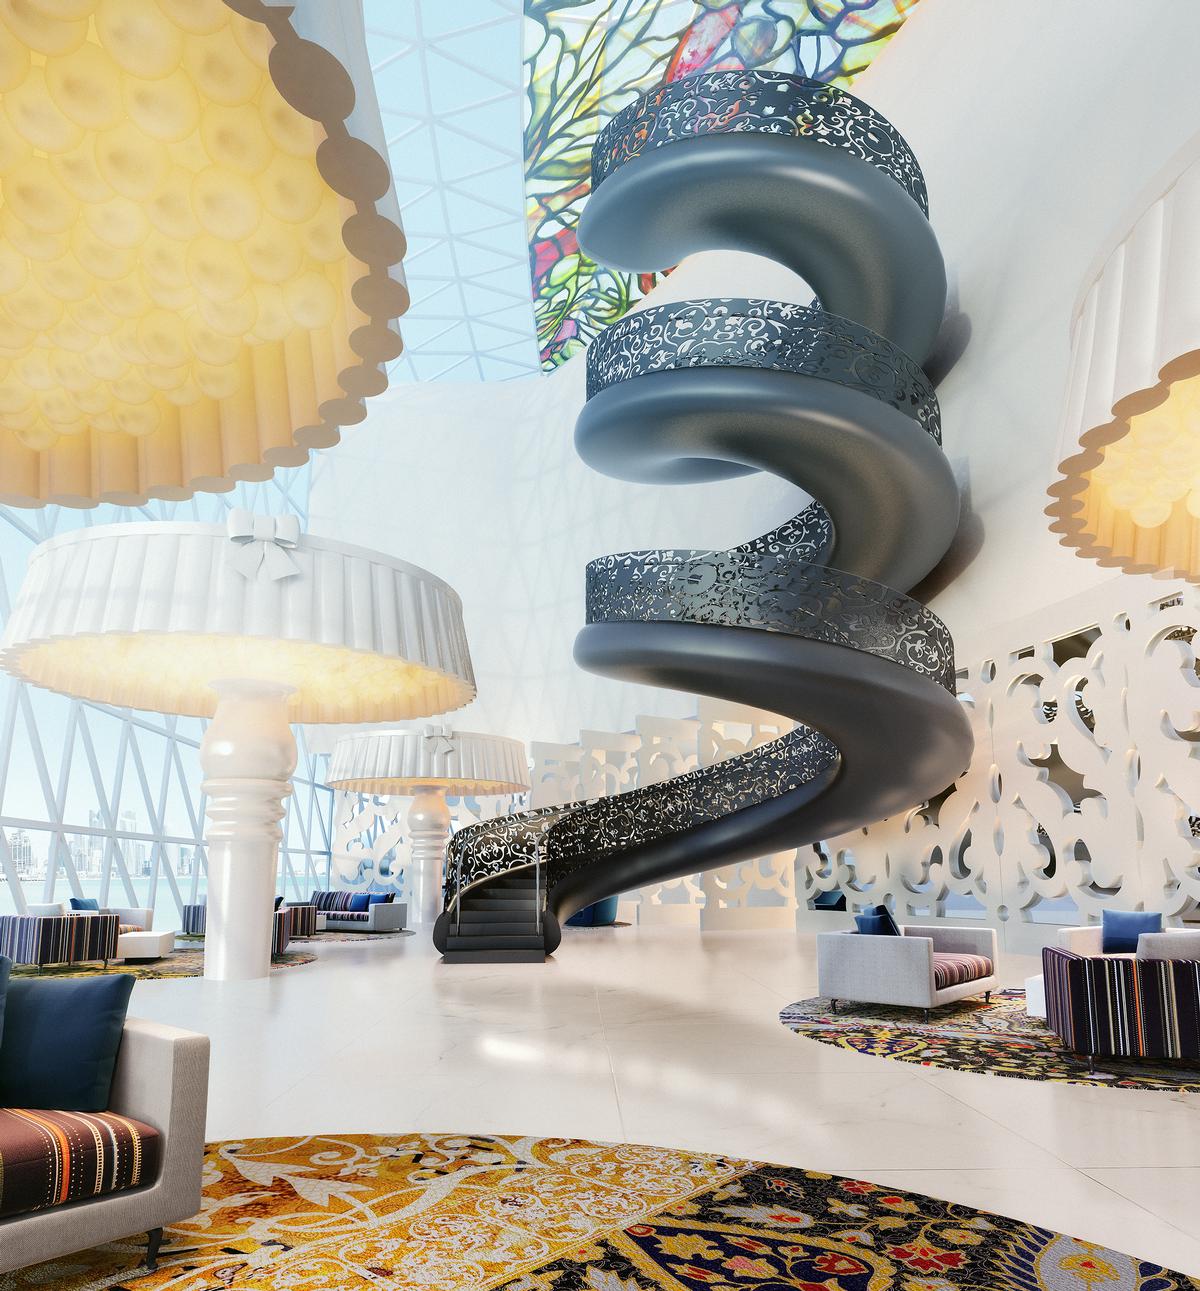 Luxury Hotel Design Projects by Marcel Wanders